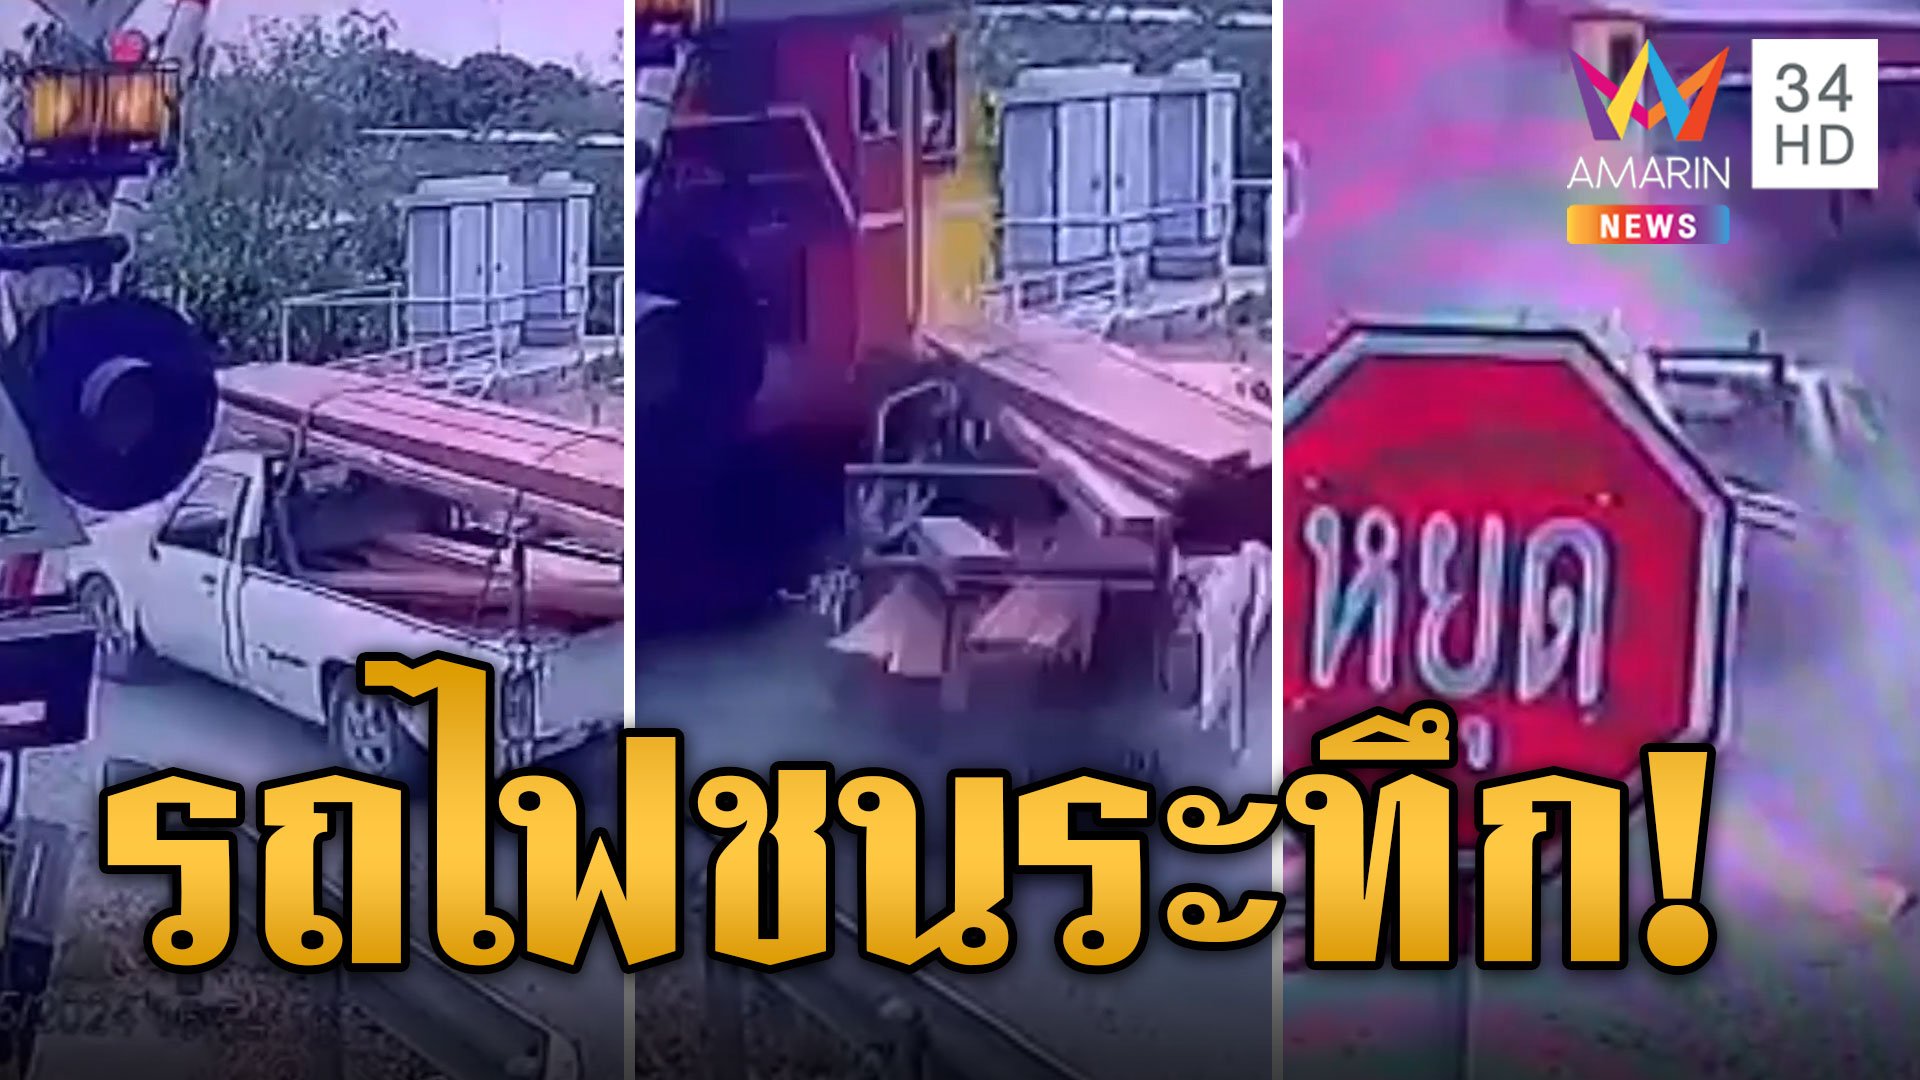 ไม้กั้นไม่ทำงาน รถไฟพุ่งชนกระบะอย่างจัง  | ข่าวอรุณอมรินทร์ | 9 พ.ค. 67 | AMARIN TVHD34